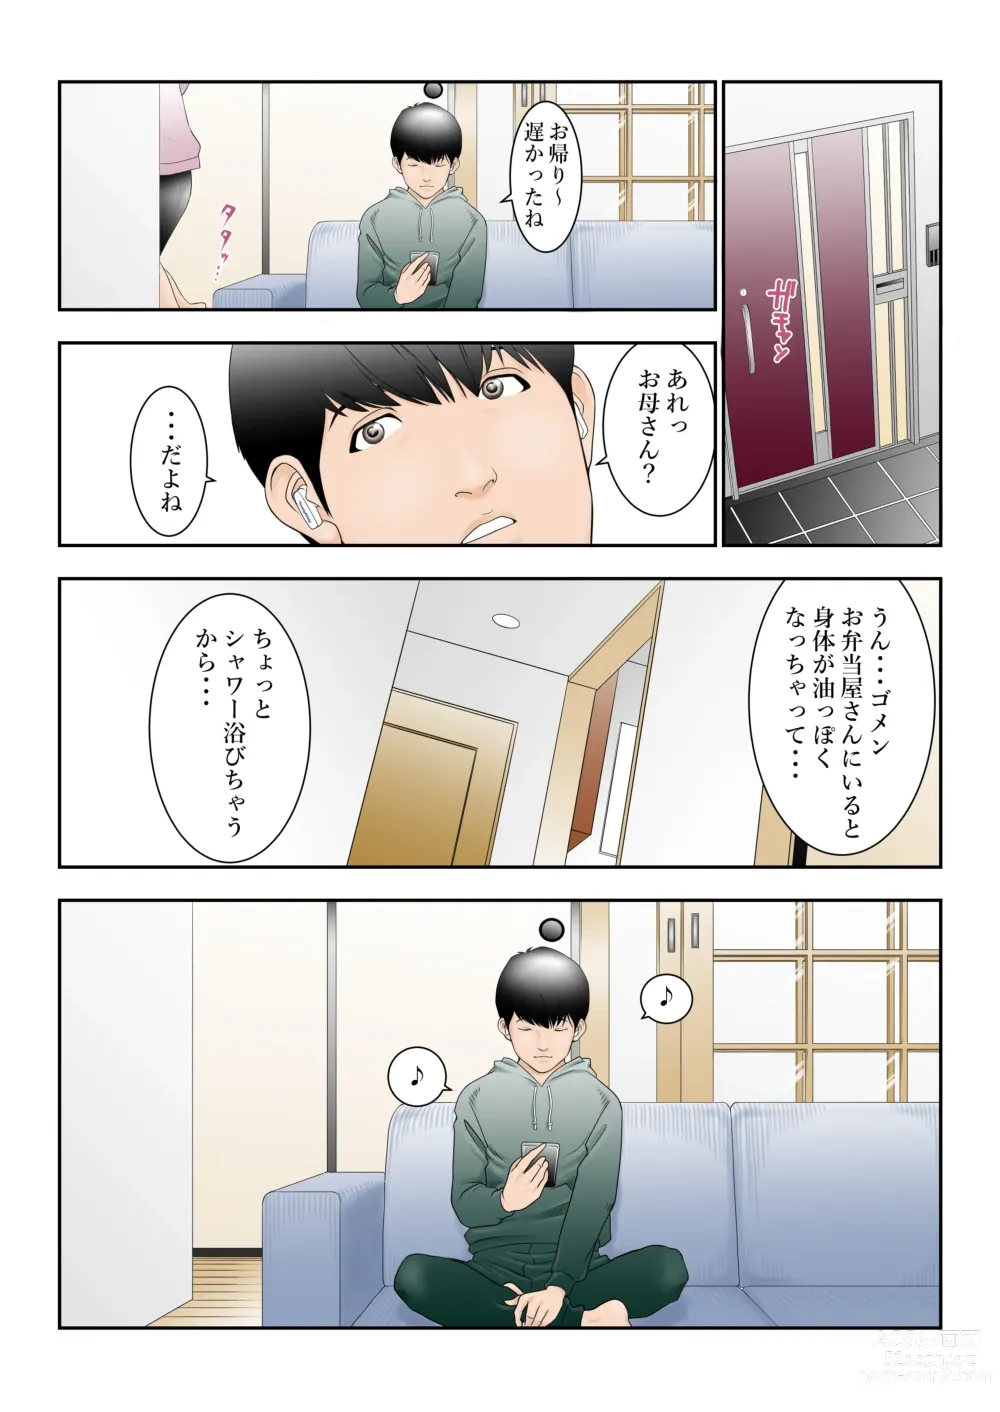 Page 7 of doujinshi Chikaku no Obentoya-san ni Part ni Deta Haha Takahara Yuuko (42) ga Aru Hi o Sakai ni Kaeri ga Osoku Natta ndesu